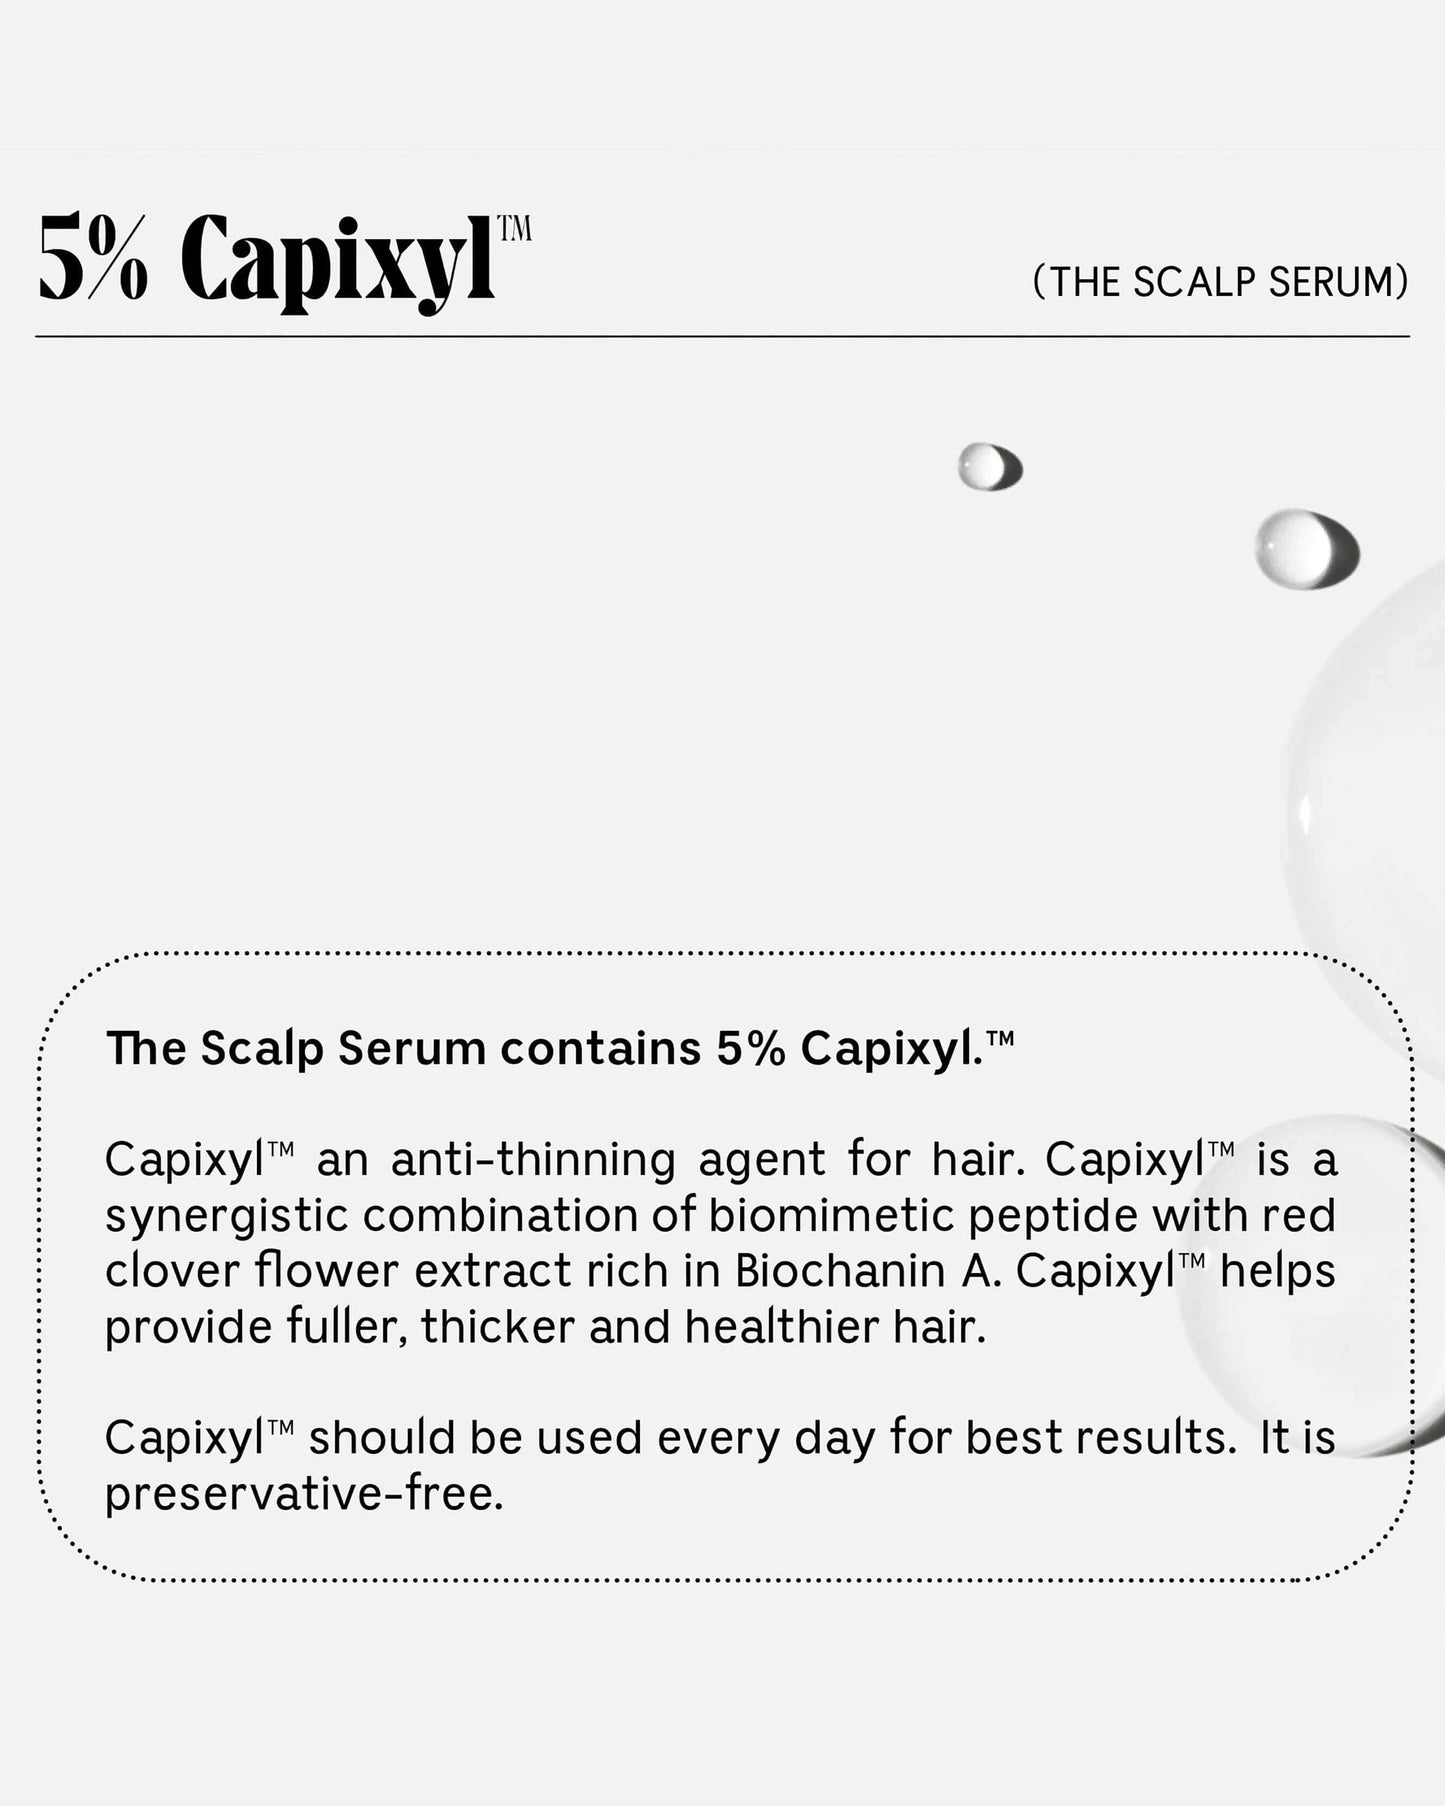 The Scalp Serum